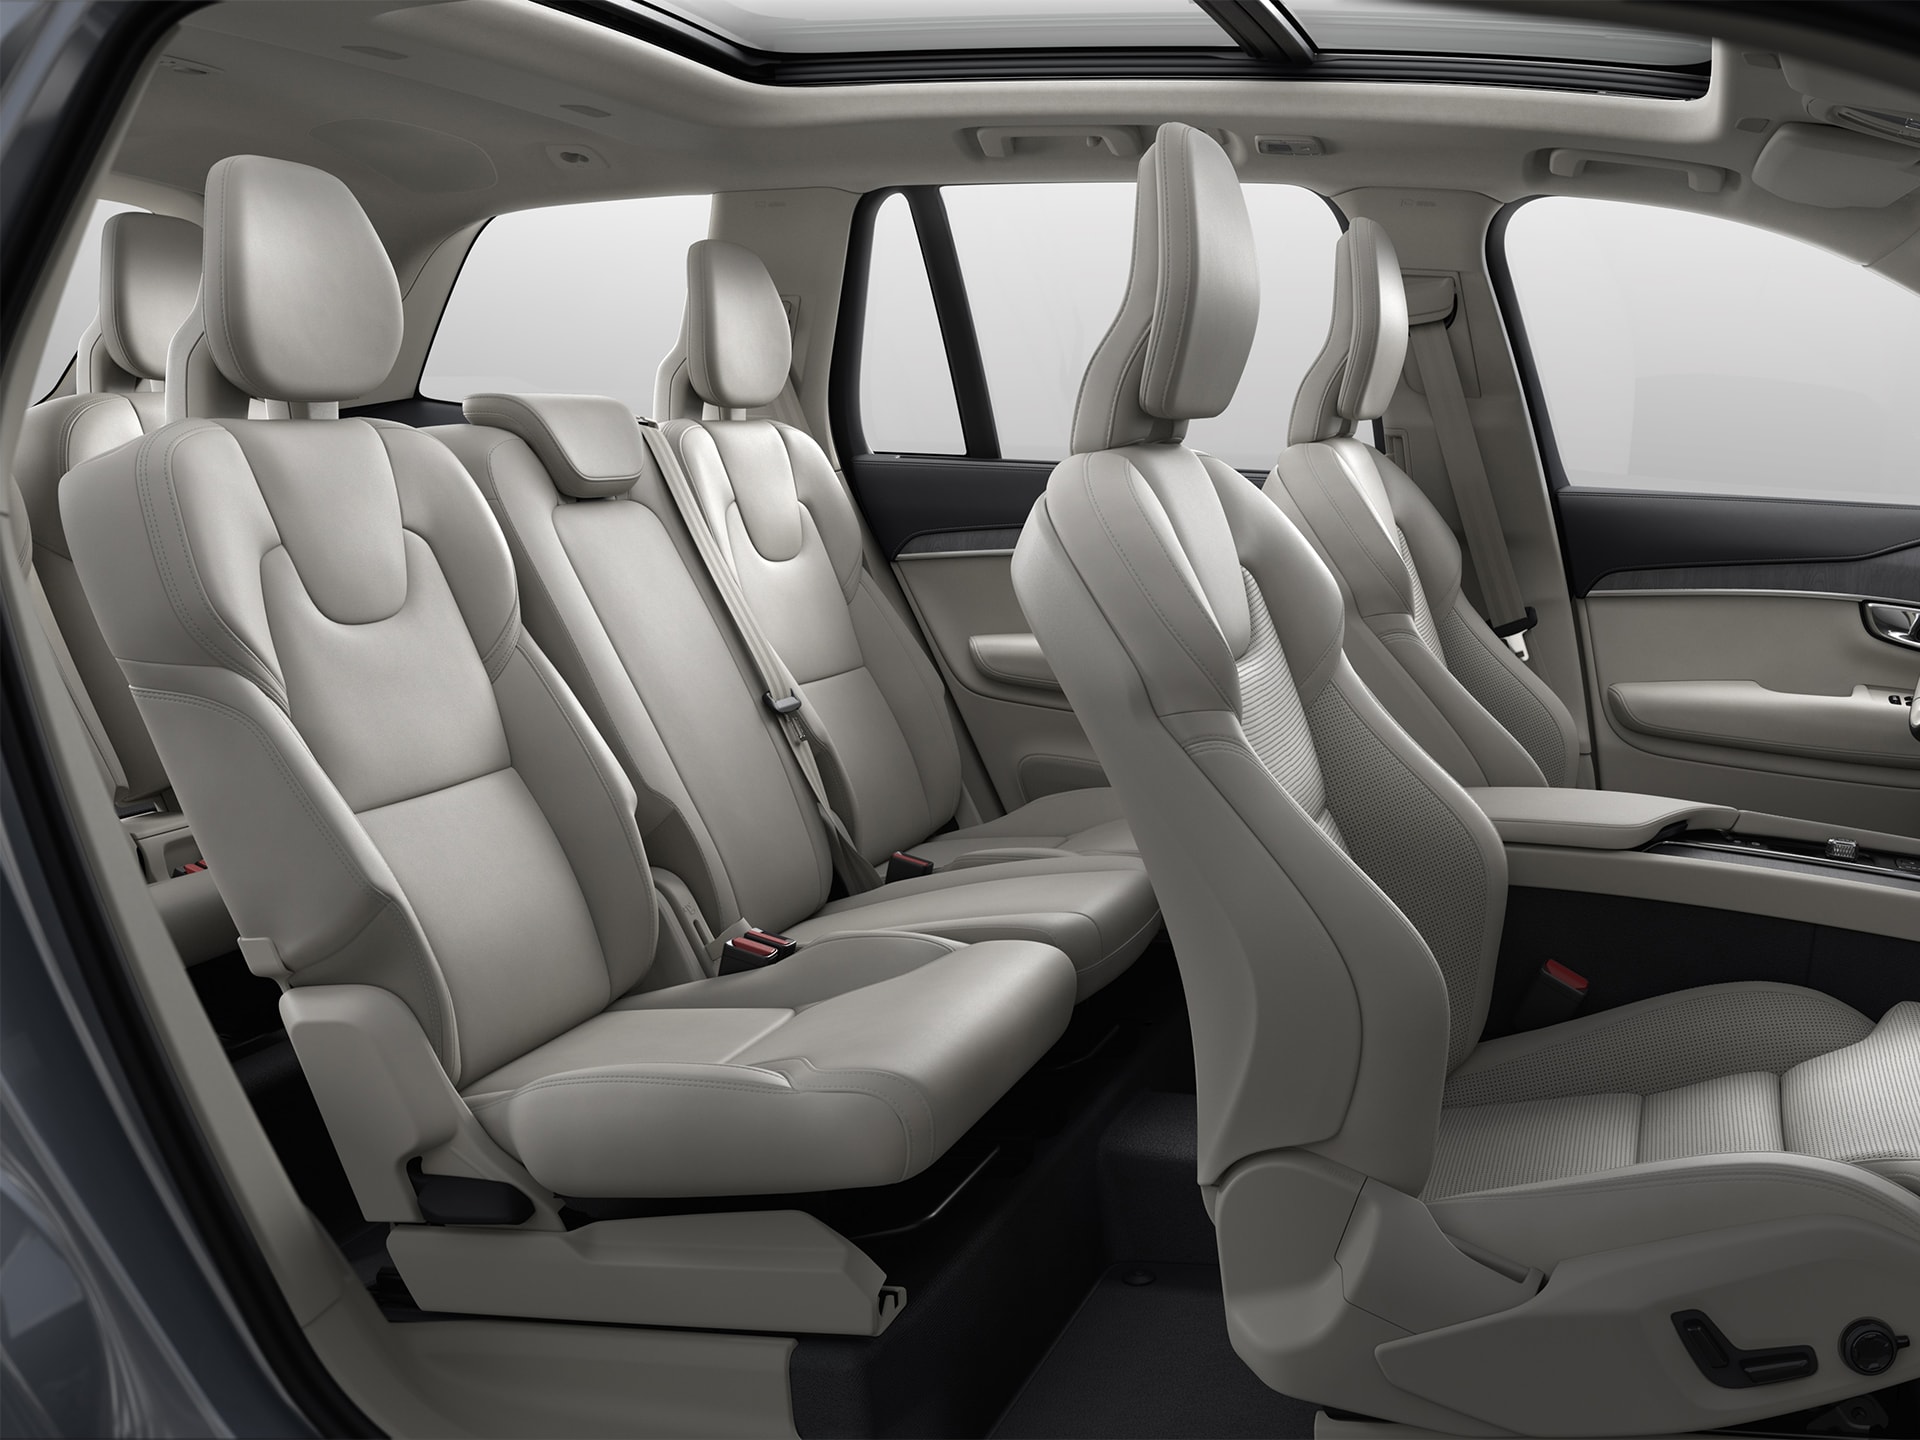 Intérieur spacieux et confortable du Volvo XC90 hybride rechargeable, le SUV le plus luxueux.